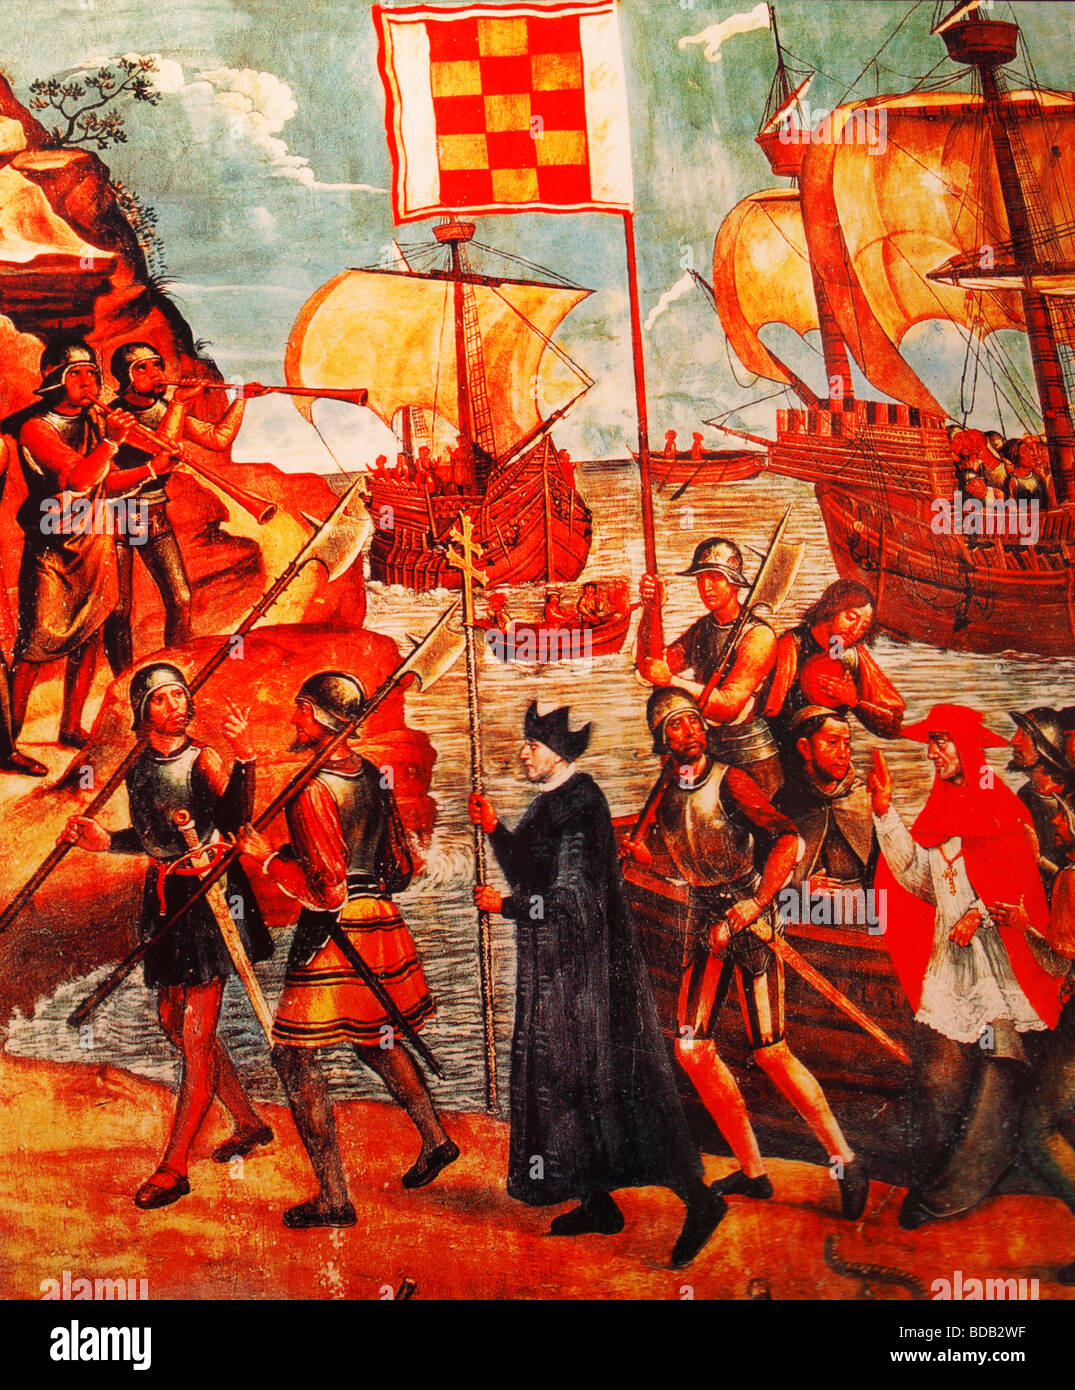 Tableau représentant les conquistadores espagnols l'atterrissage sur un sol étranger Banque D'Images